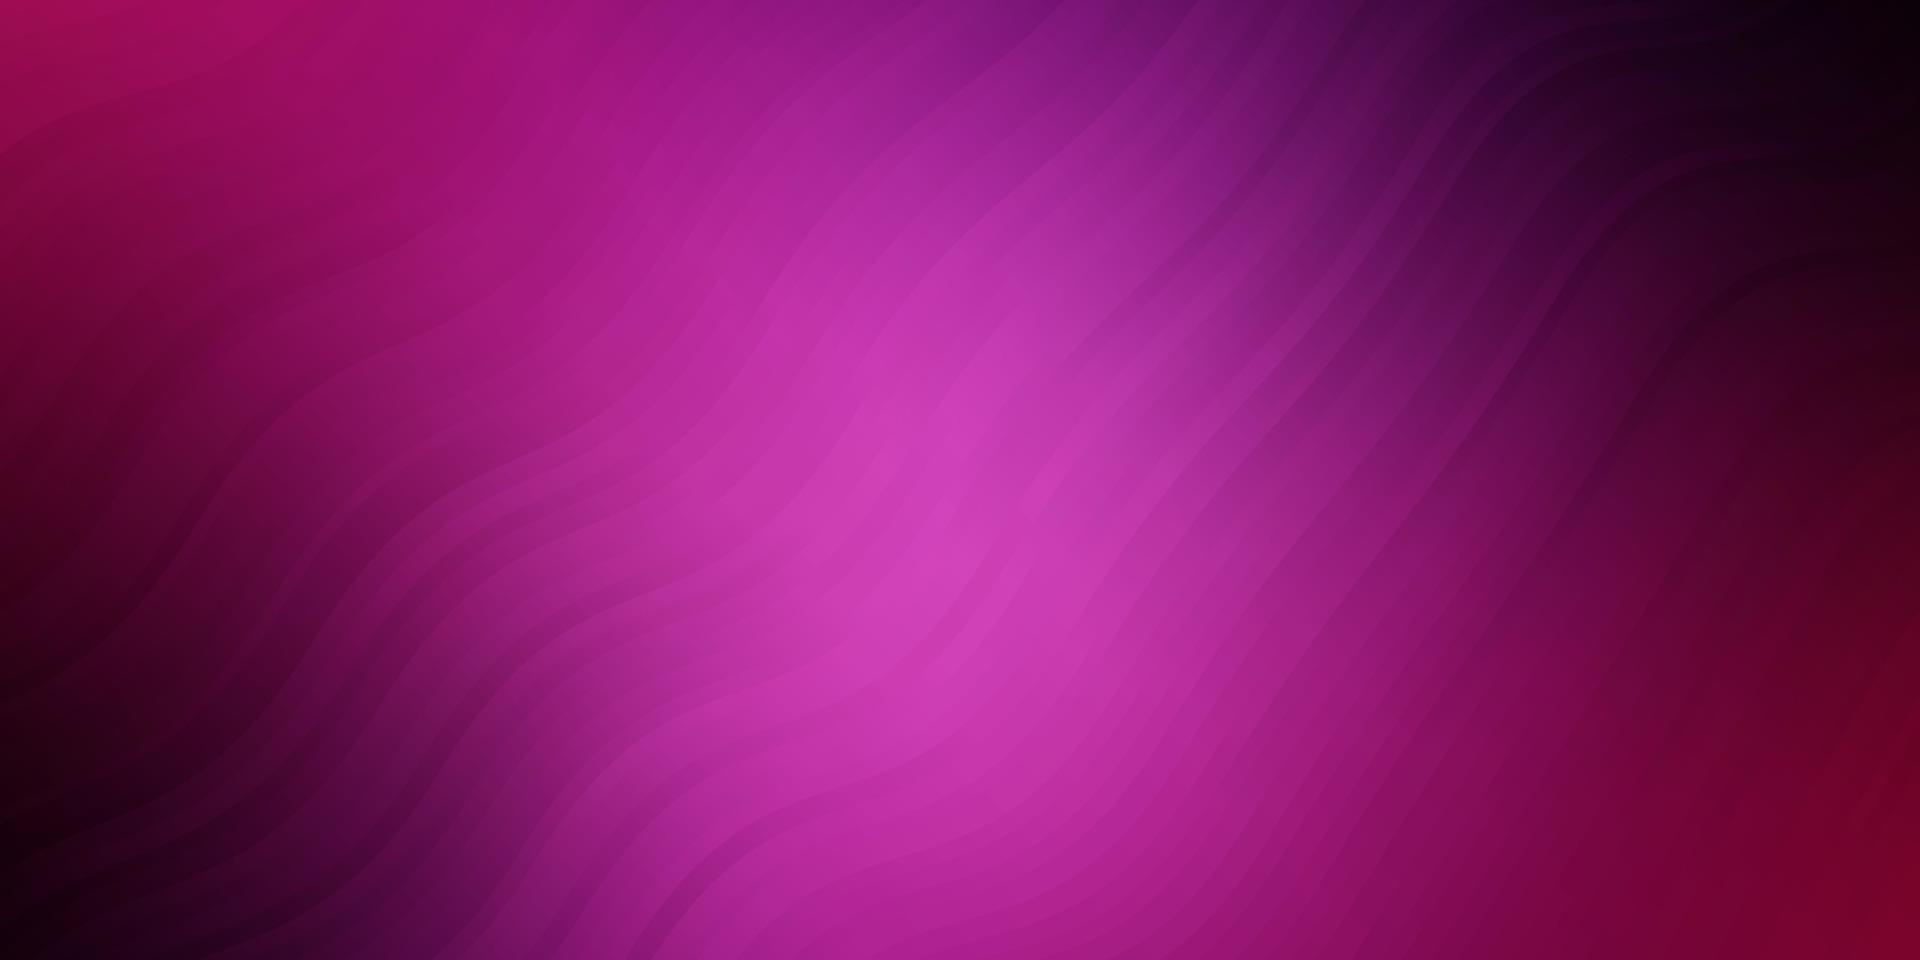 fond de vecteur violet foncé, rose avec des lignes courbes.